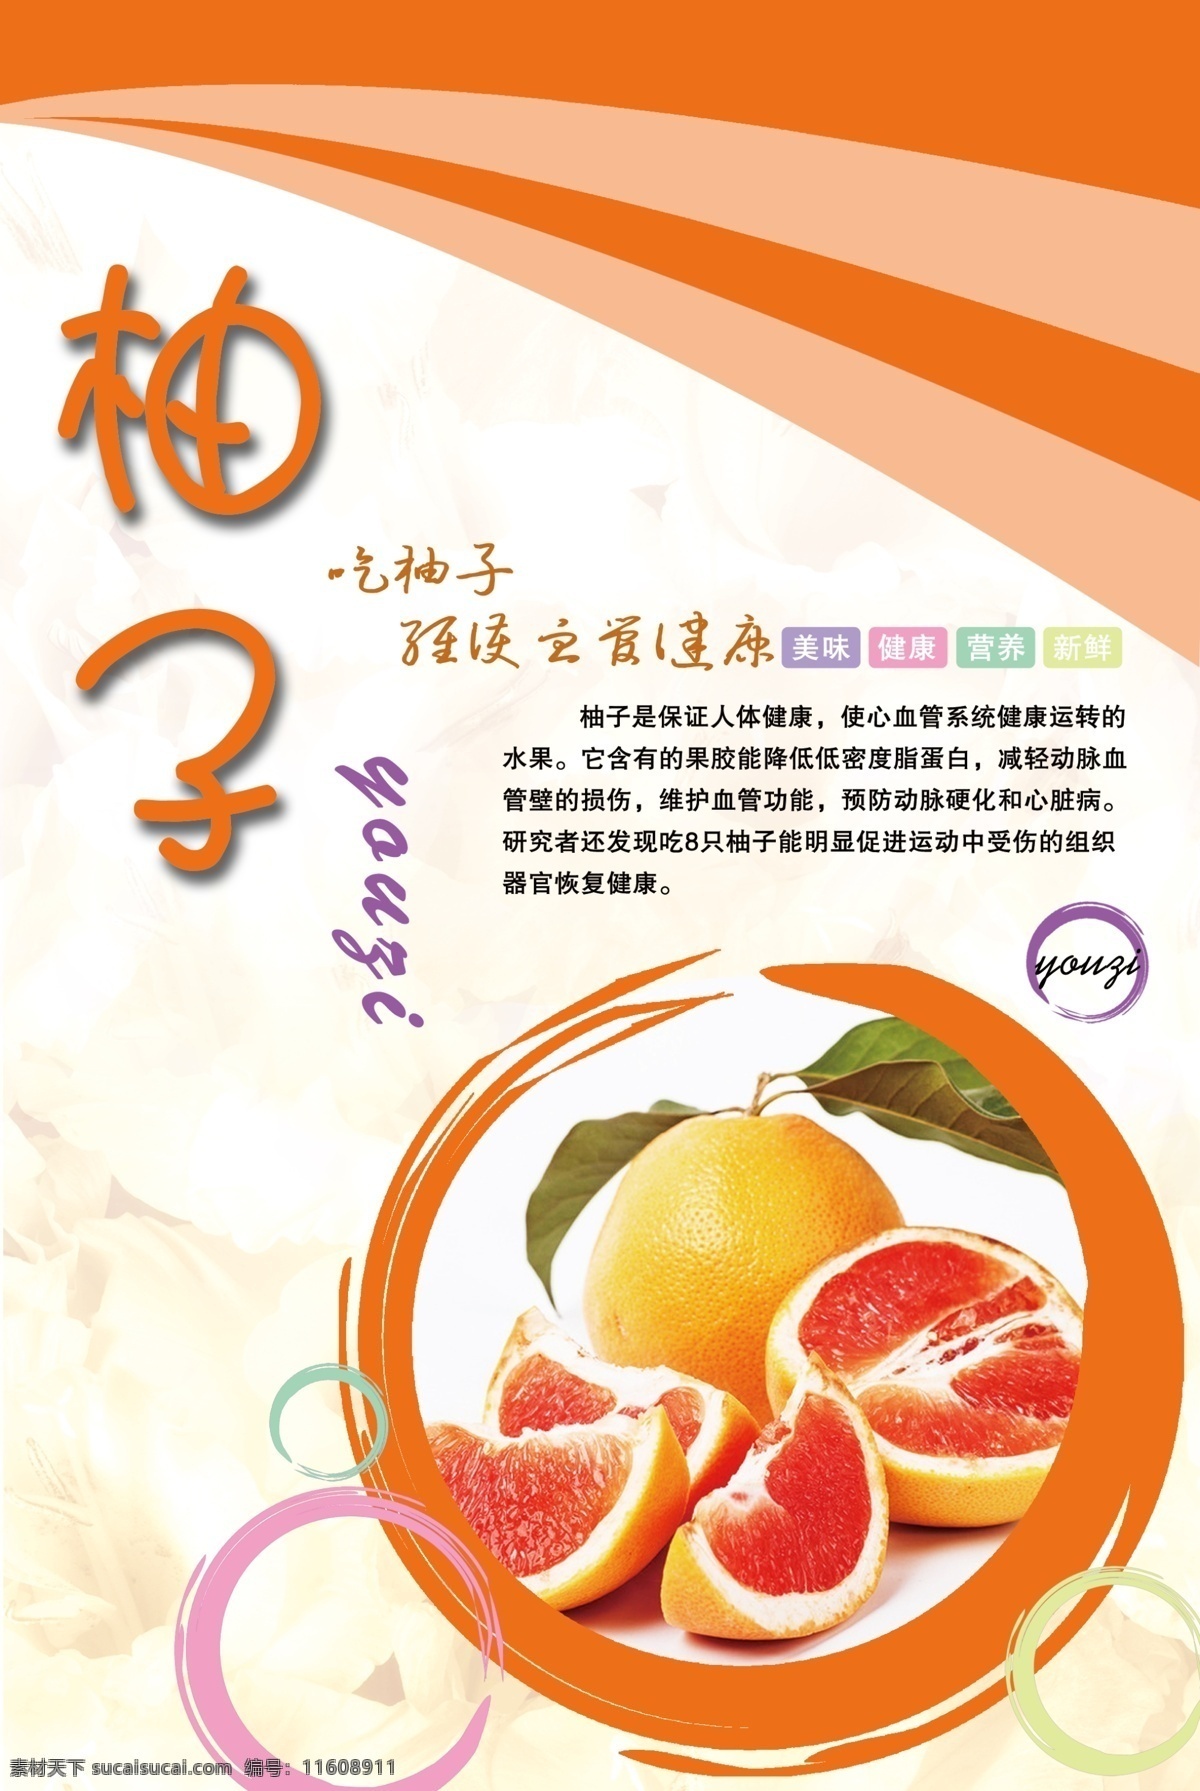 柚子水果海报 柚子 柚子海报 水果海报 水果营养知识 水果促销 水果展板 水果广告 海报模板